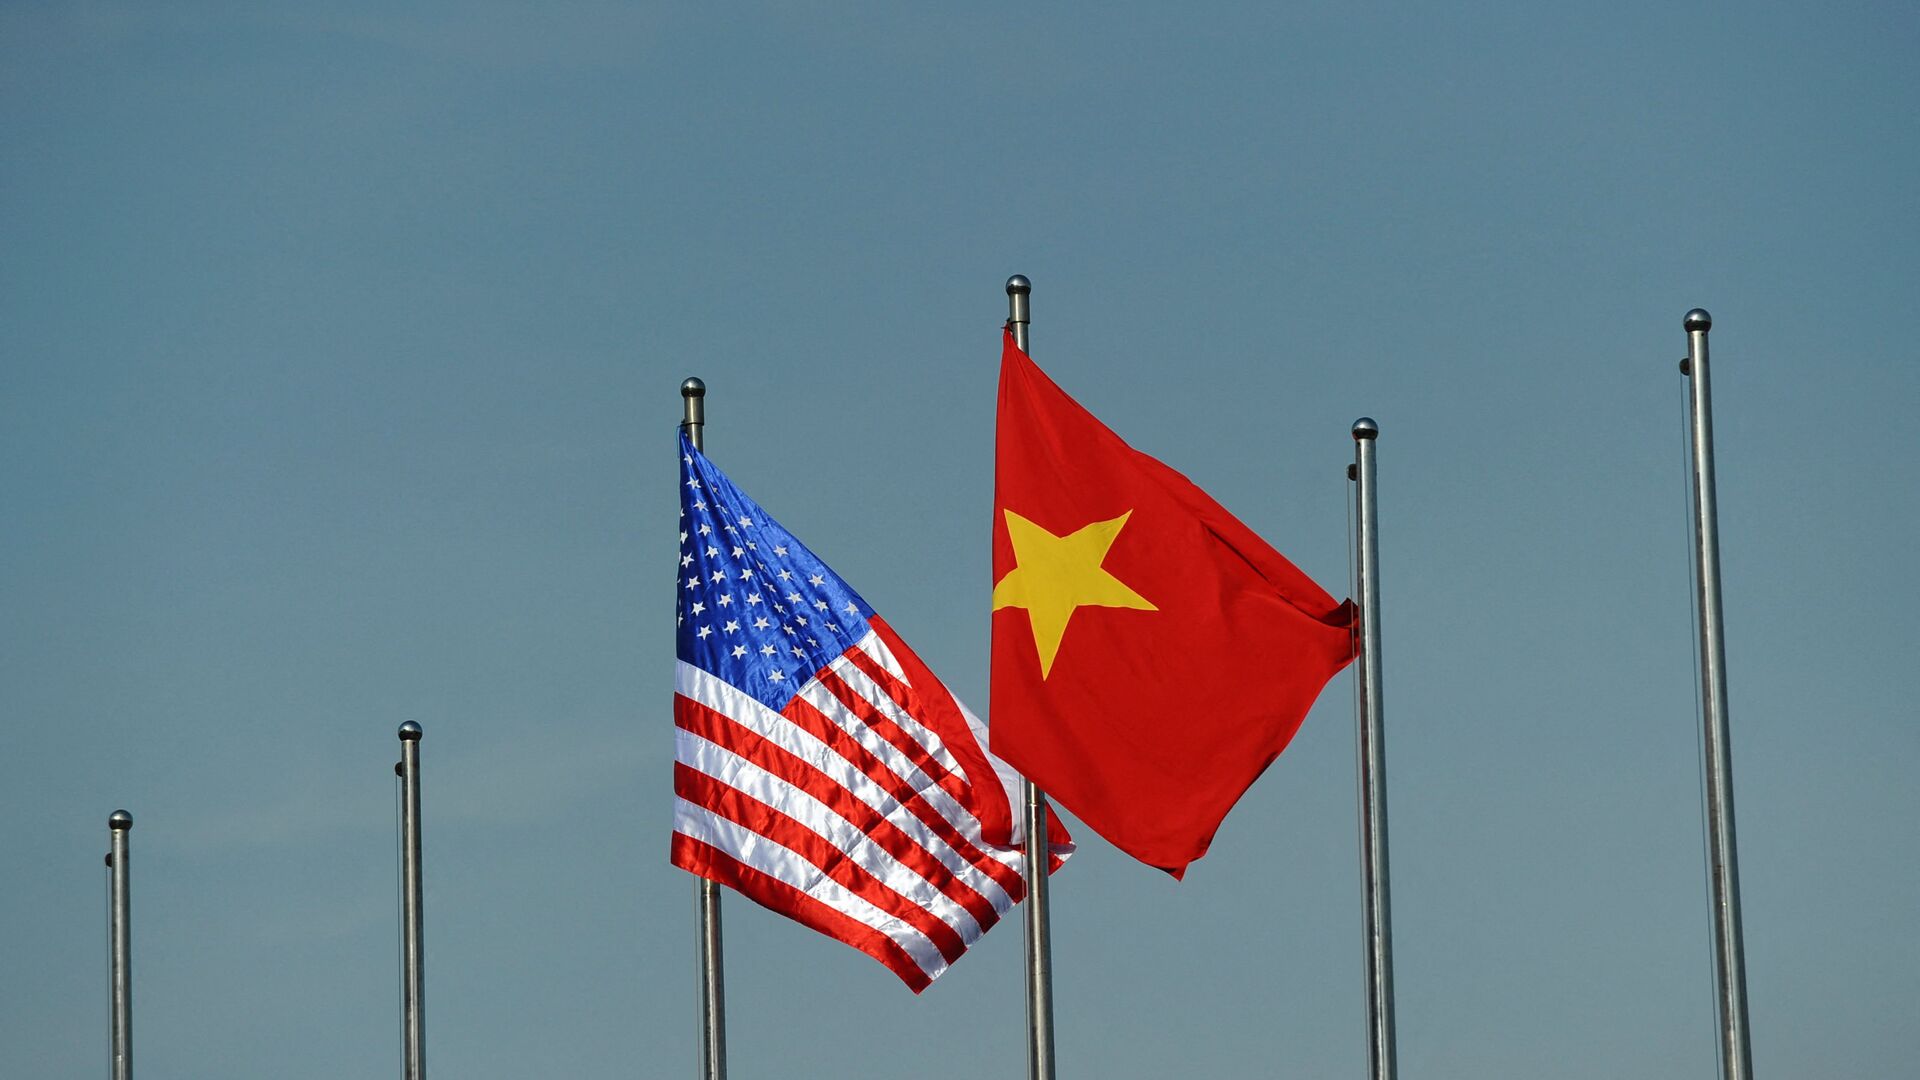 Quốc kỳ của Hoa Kỳ và Việt Nam. - Sputnik Việt Nam, 1920, 05.08.2021